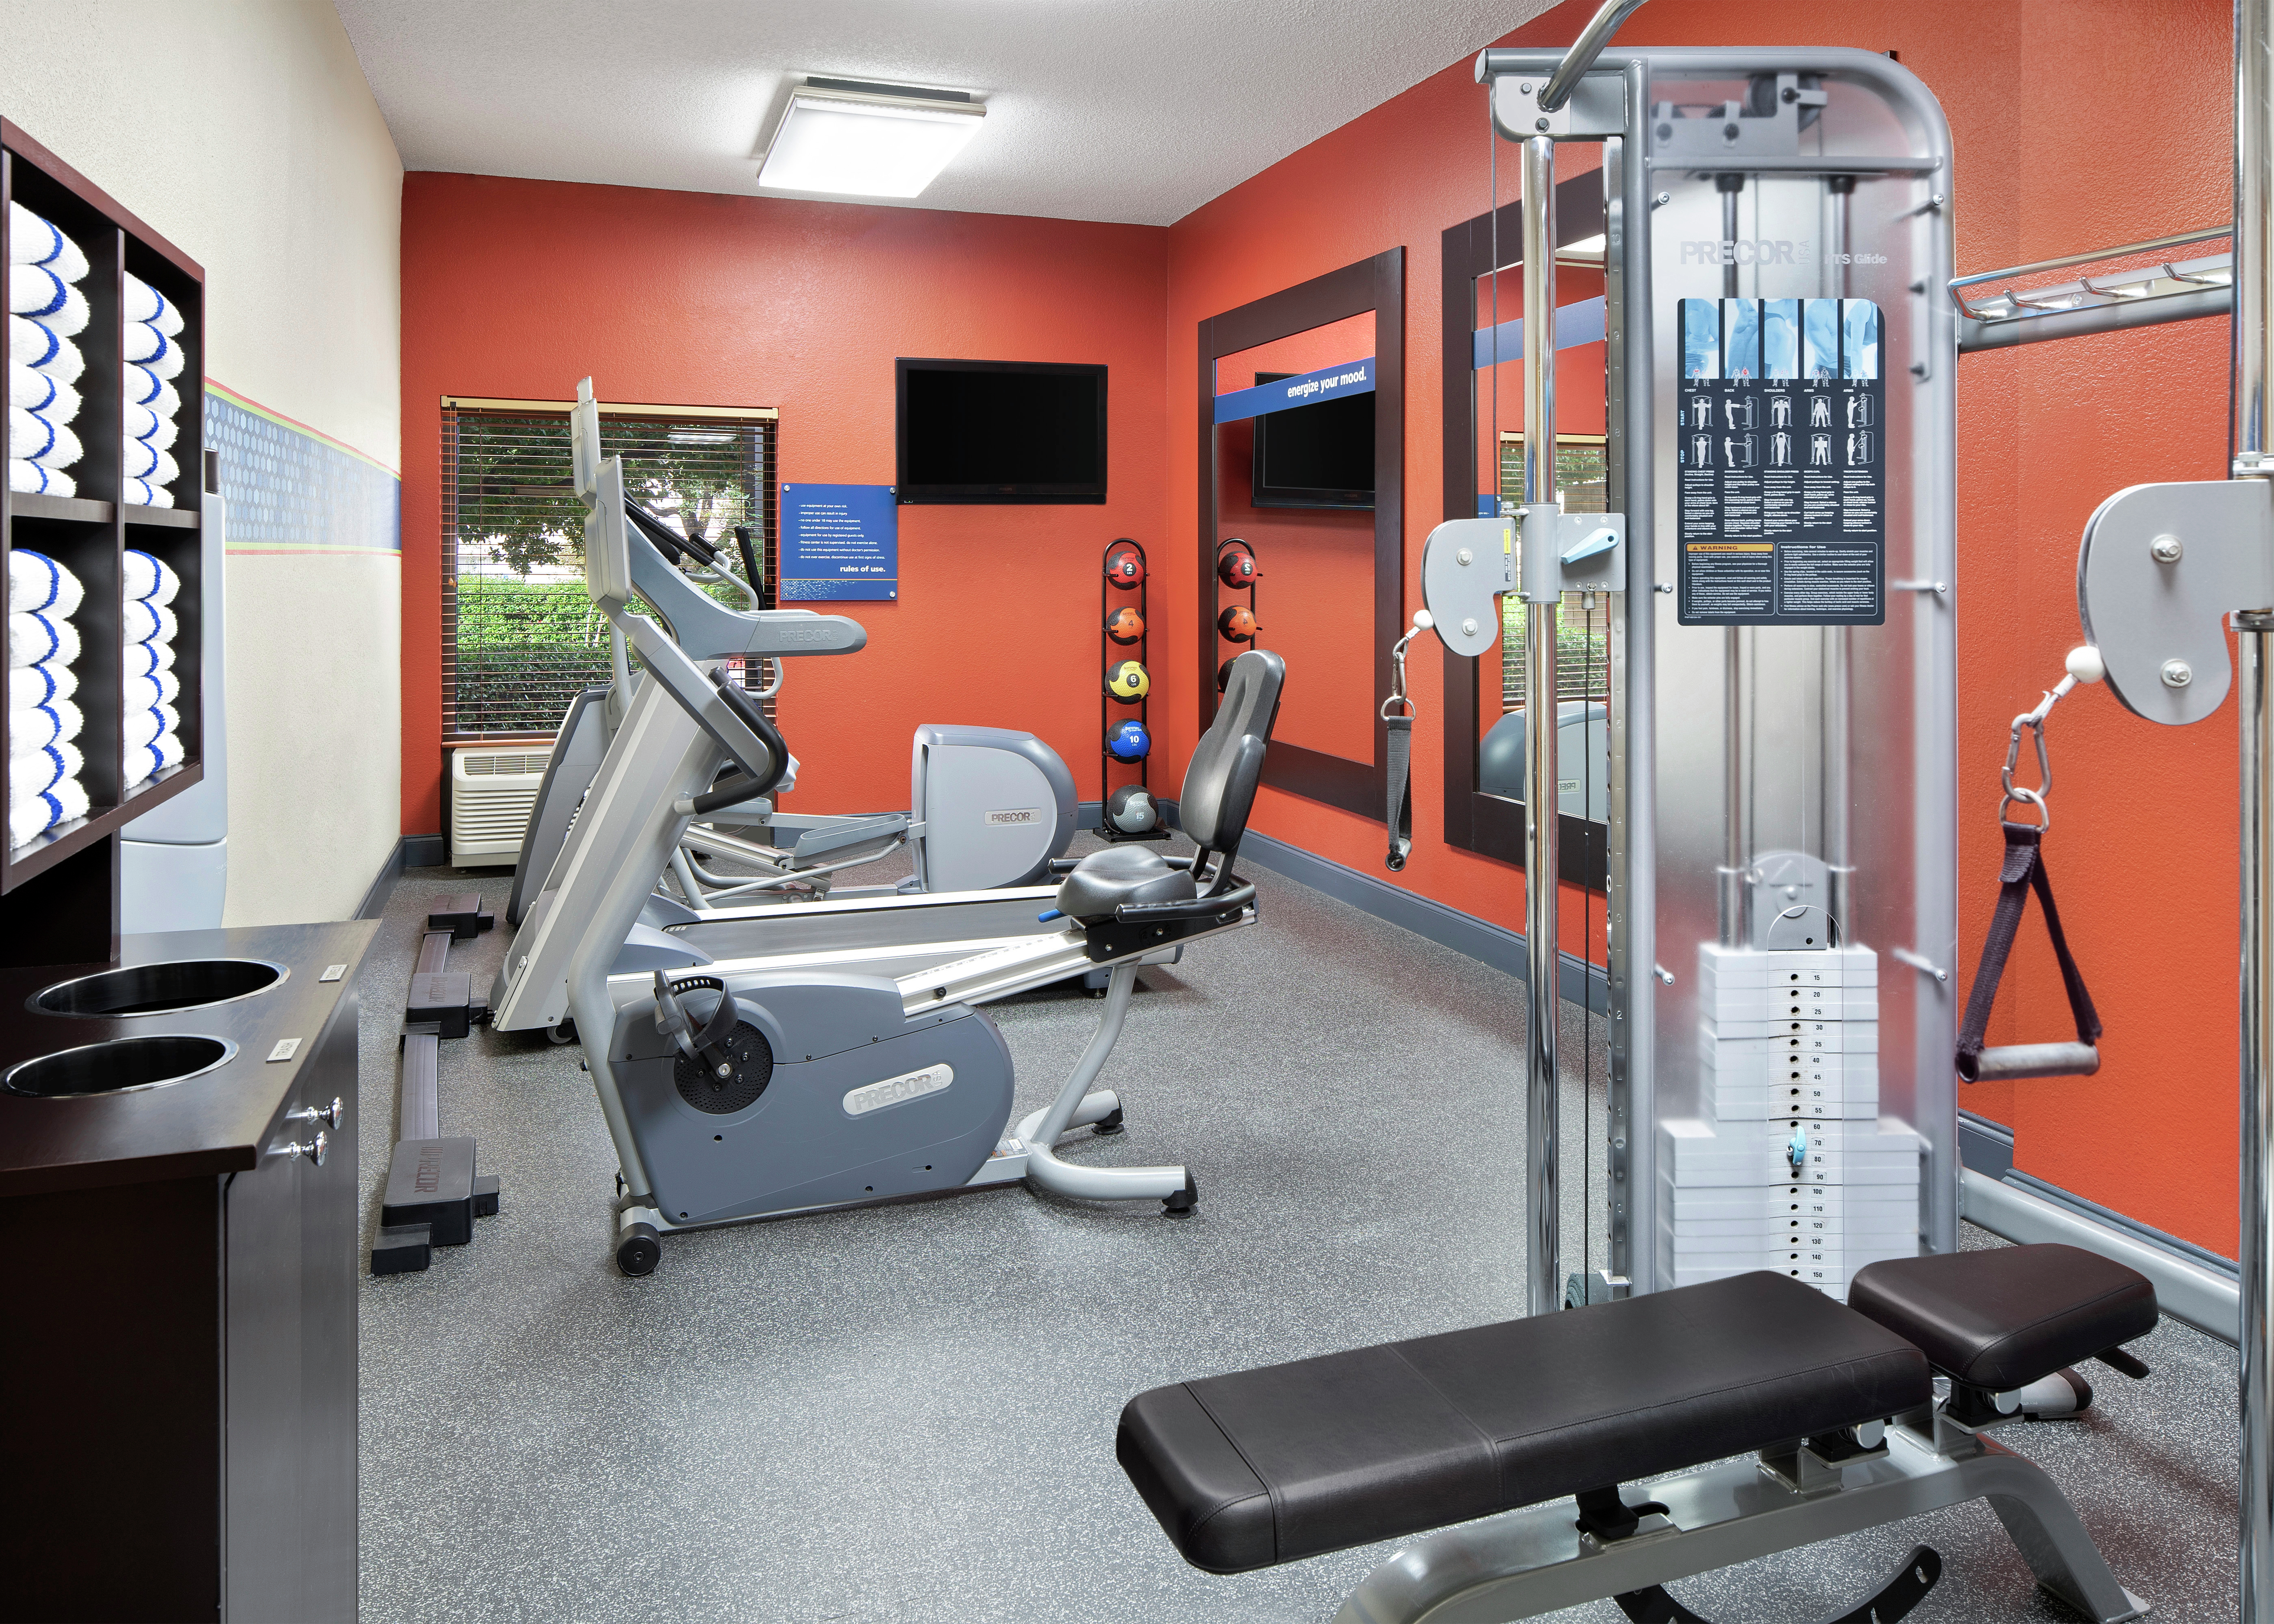 Exercise Equipment in Fitness Center